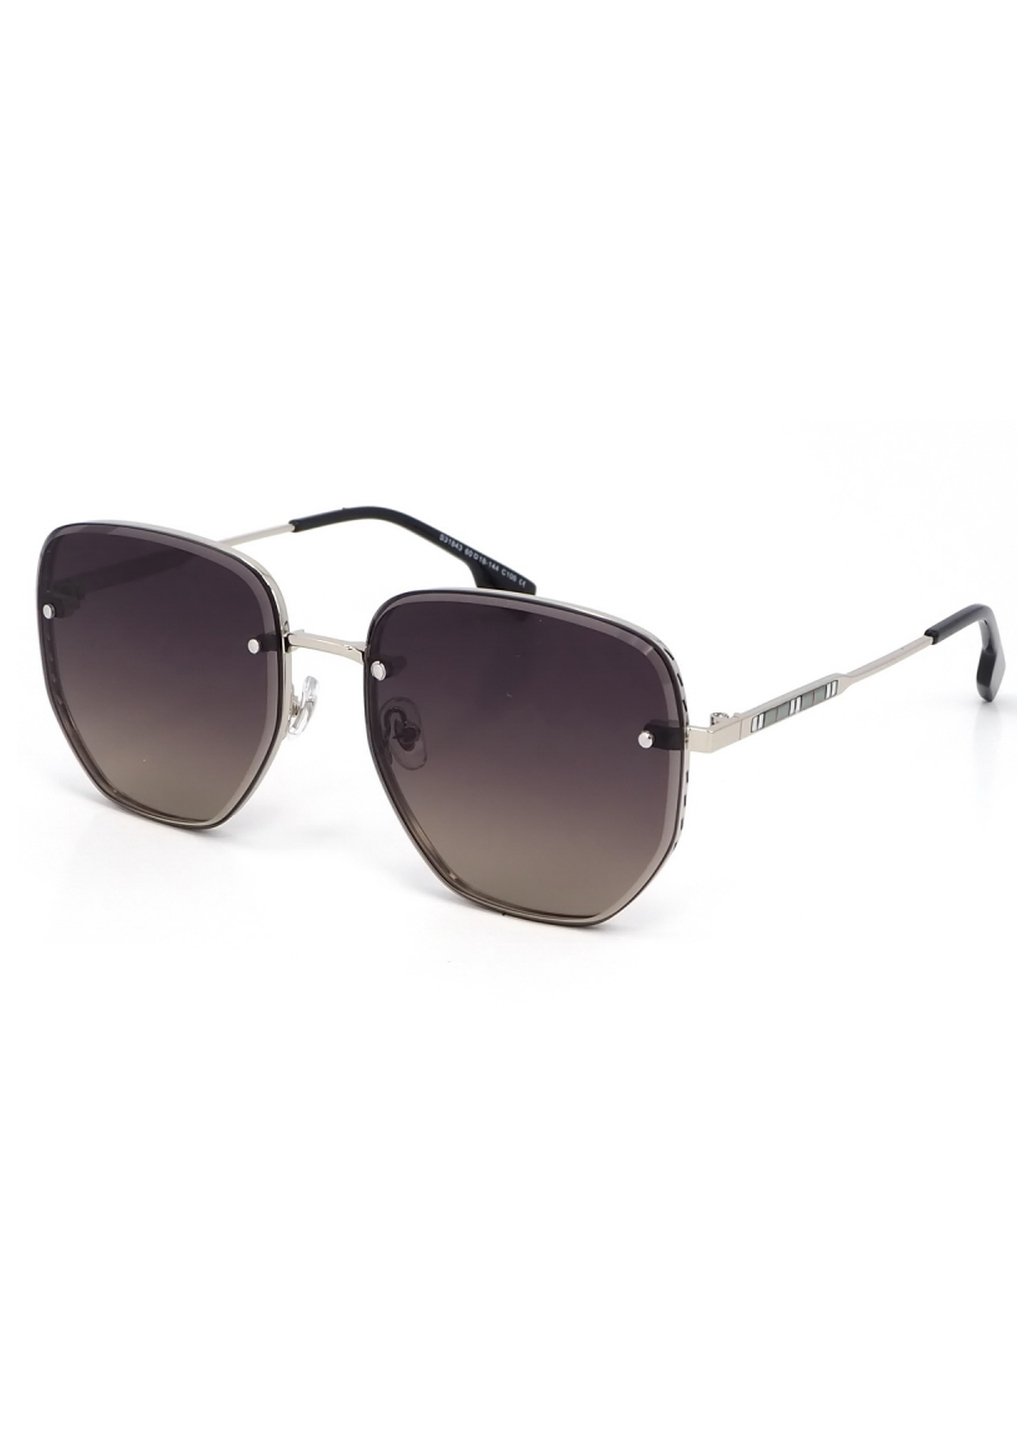 Купить Женские солнцезащитные очки Merlini с поляризацией S31843 117132 - Серебристый в интернет-магазине